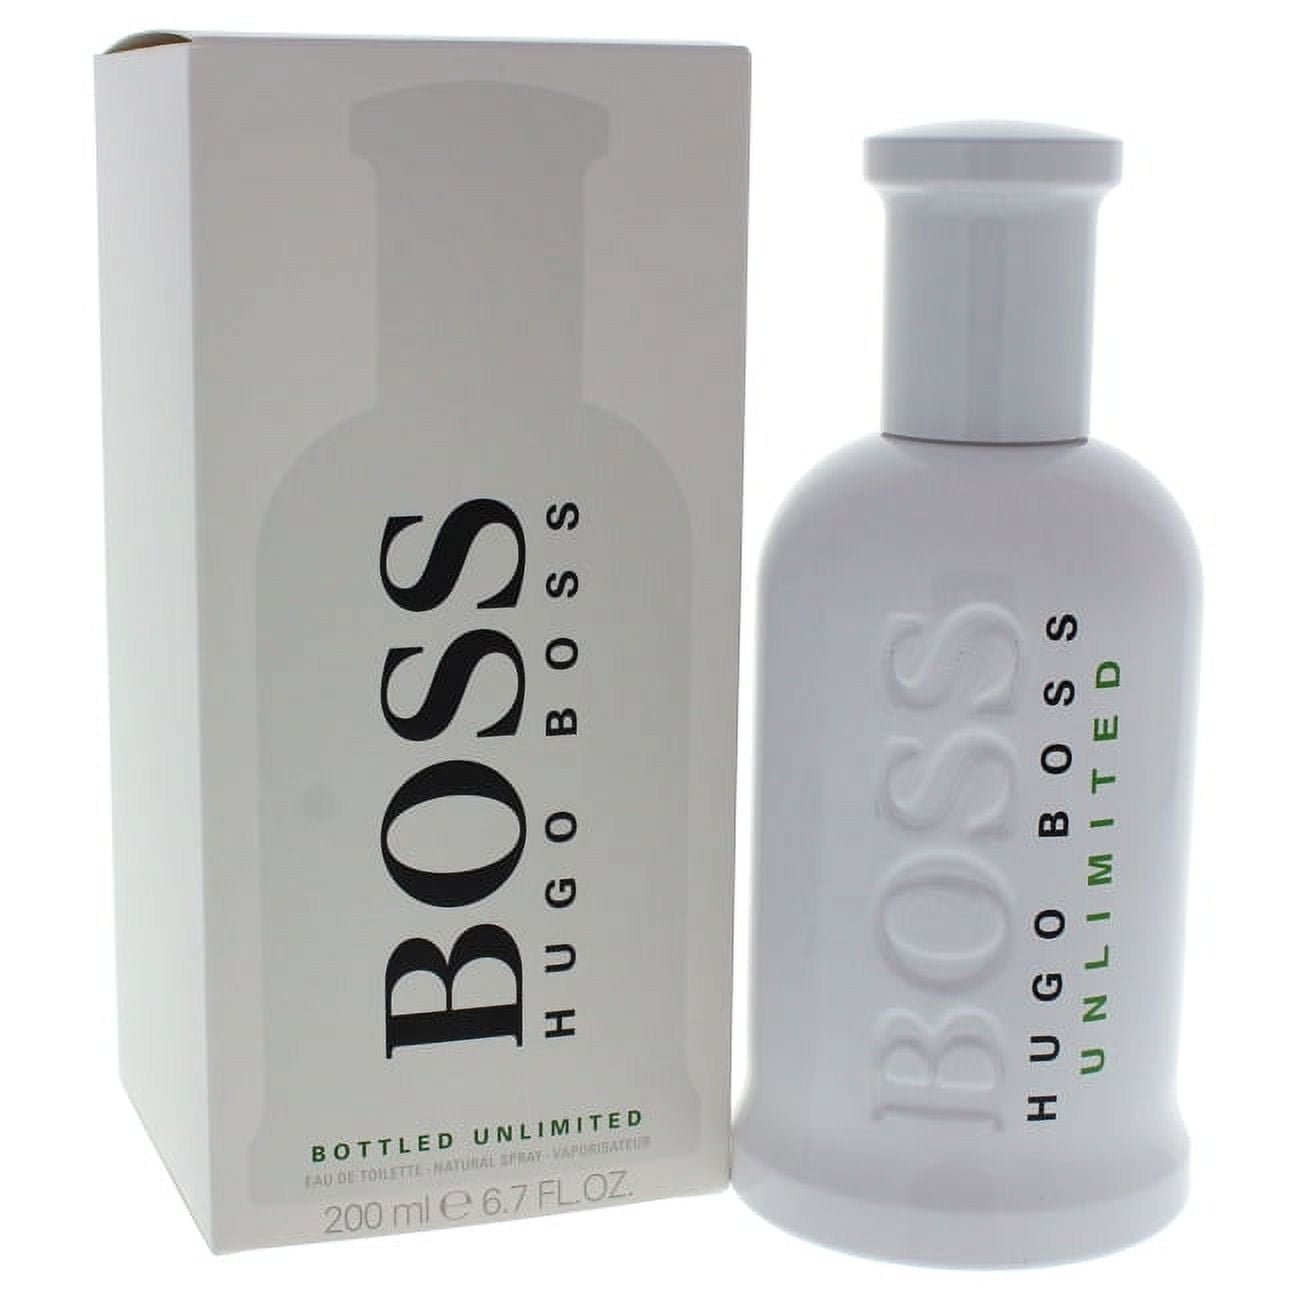 HUGO BOSS BOSS Bottled Unlimited Eau de Toilette, Cologne for Men, 6.7 Oz